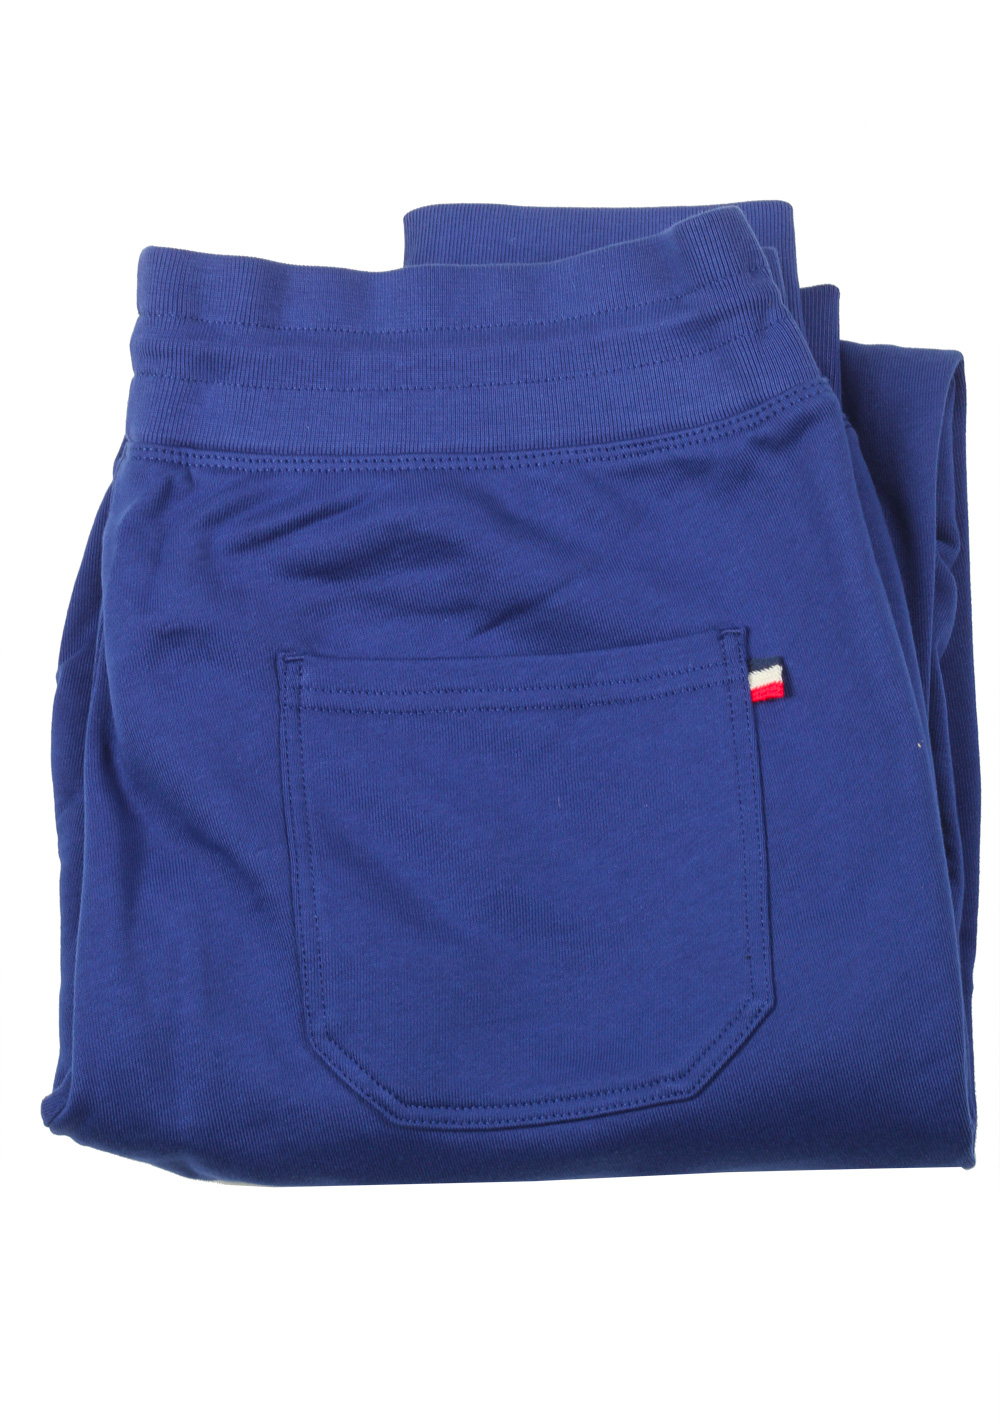 Moncler Blue Sweatpants Trousers Size XL / 36 U.S. | Costume Limité